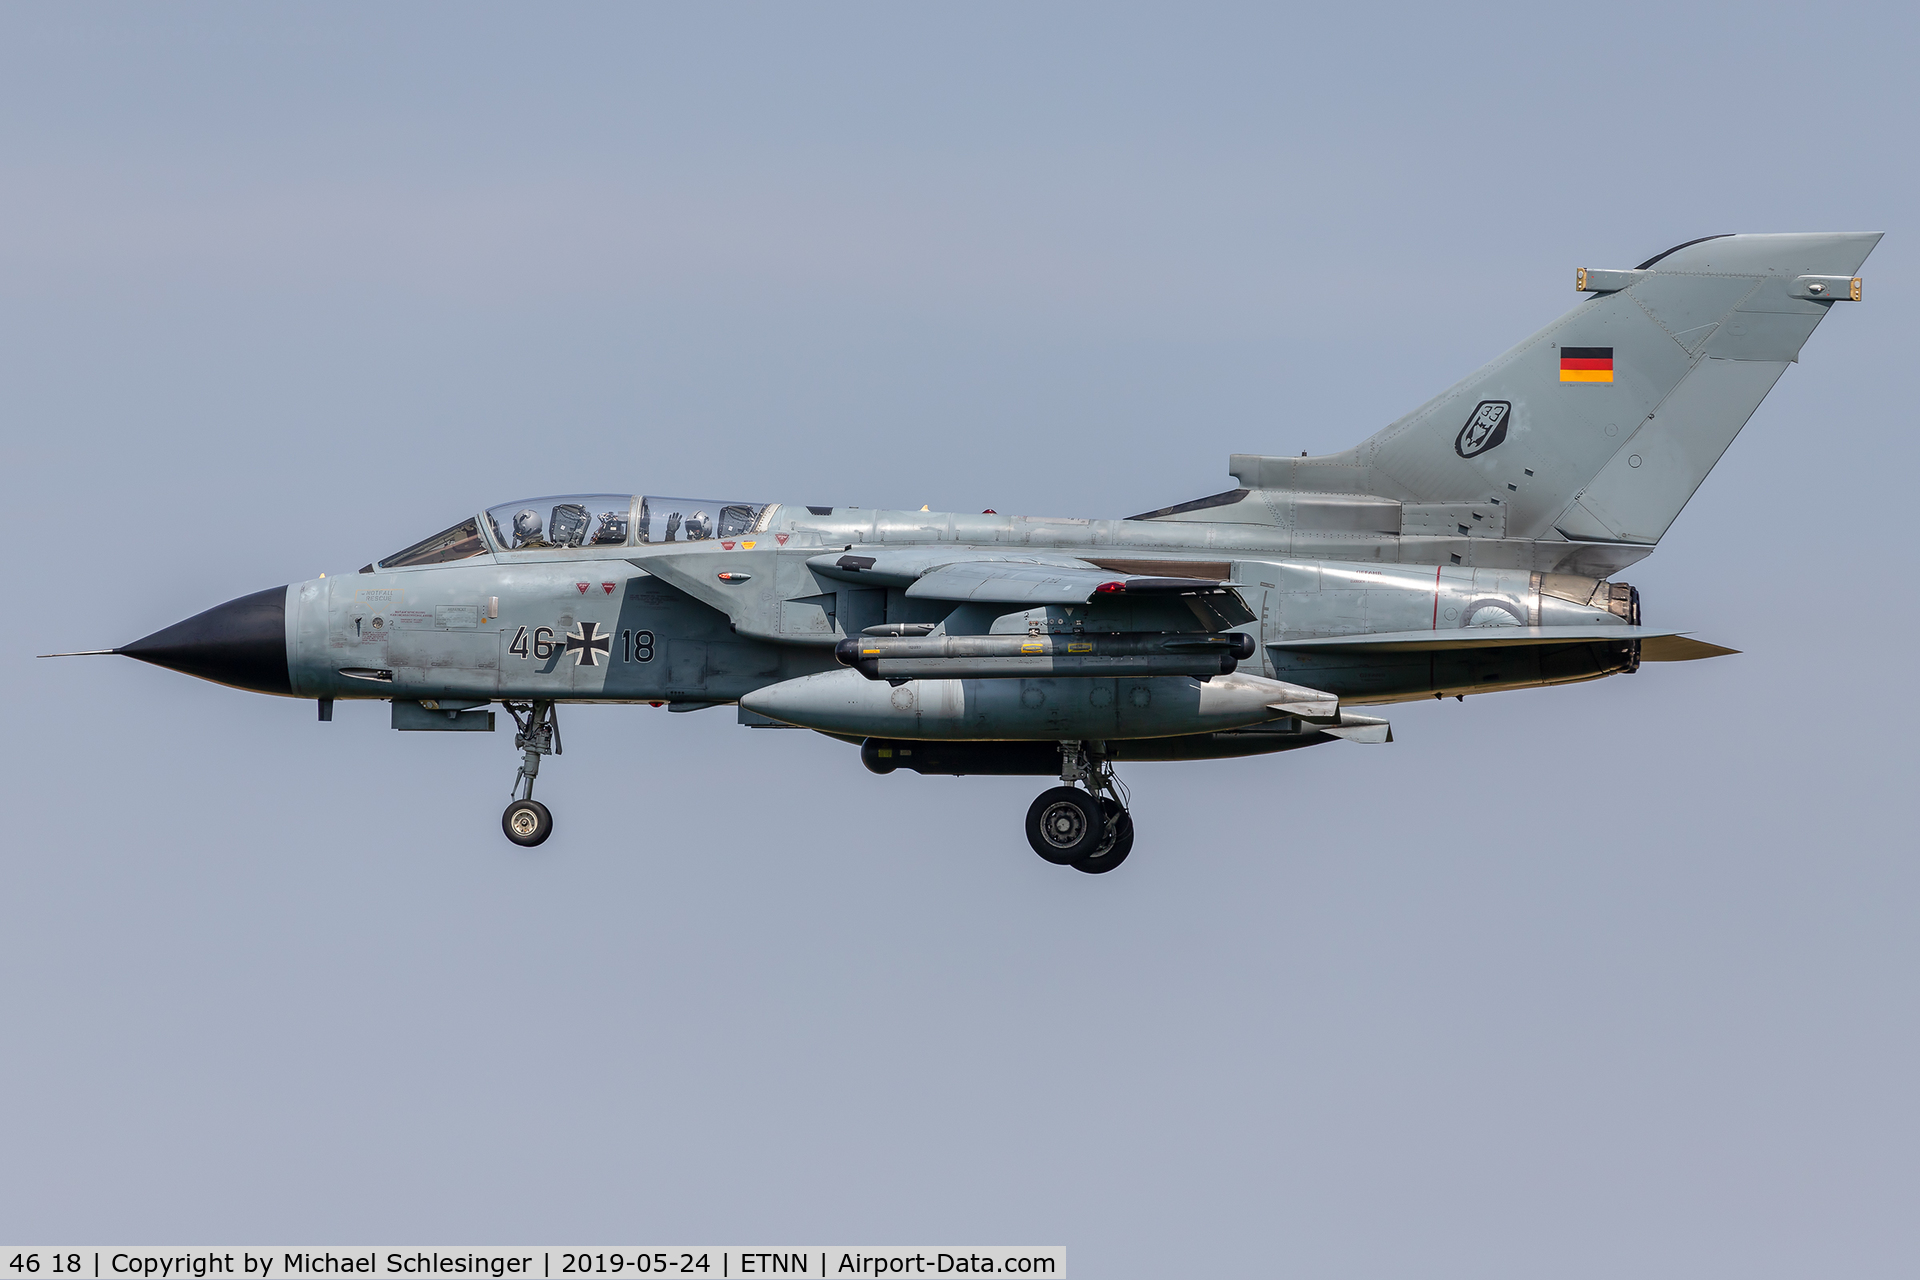 46 18, Panavia Tornado IDS C/N 789/GS251/4318, 46+18 - Panavia Tornado IDS - German Air Force